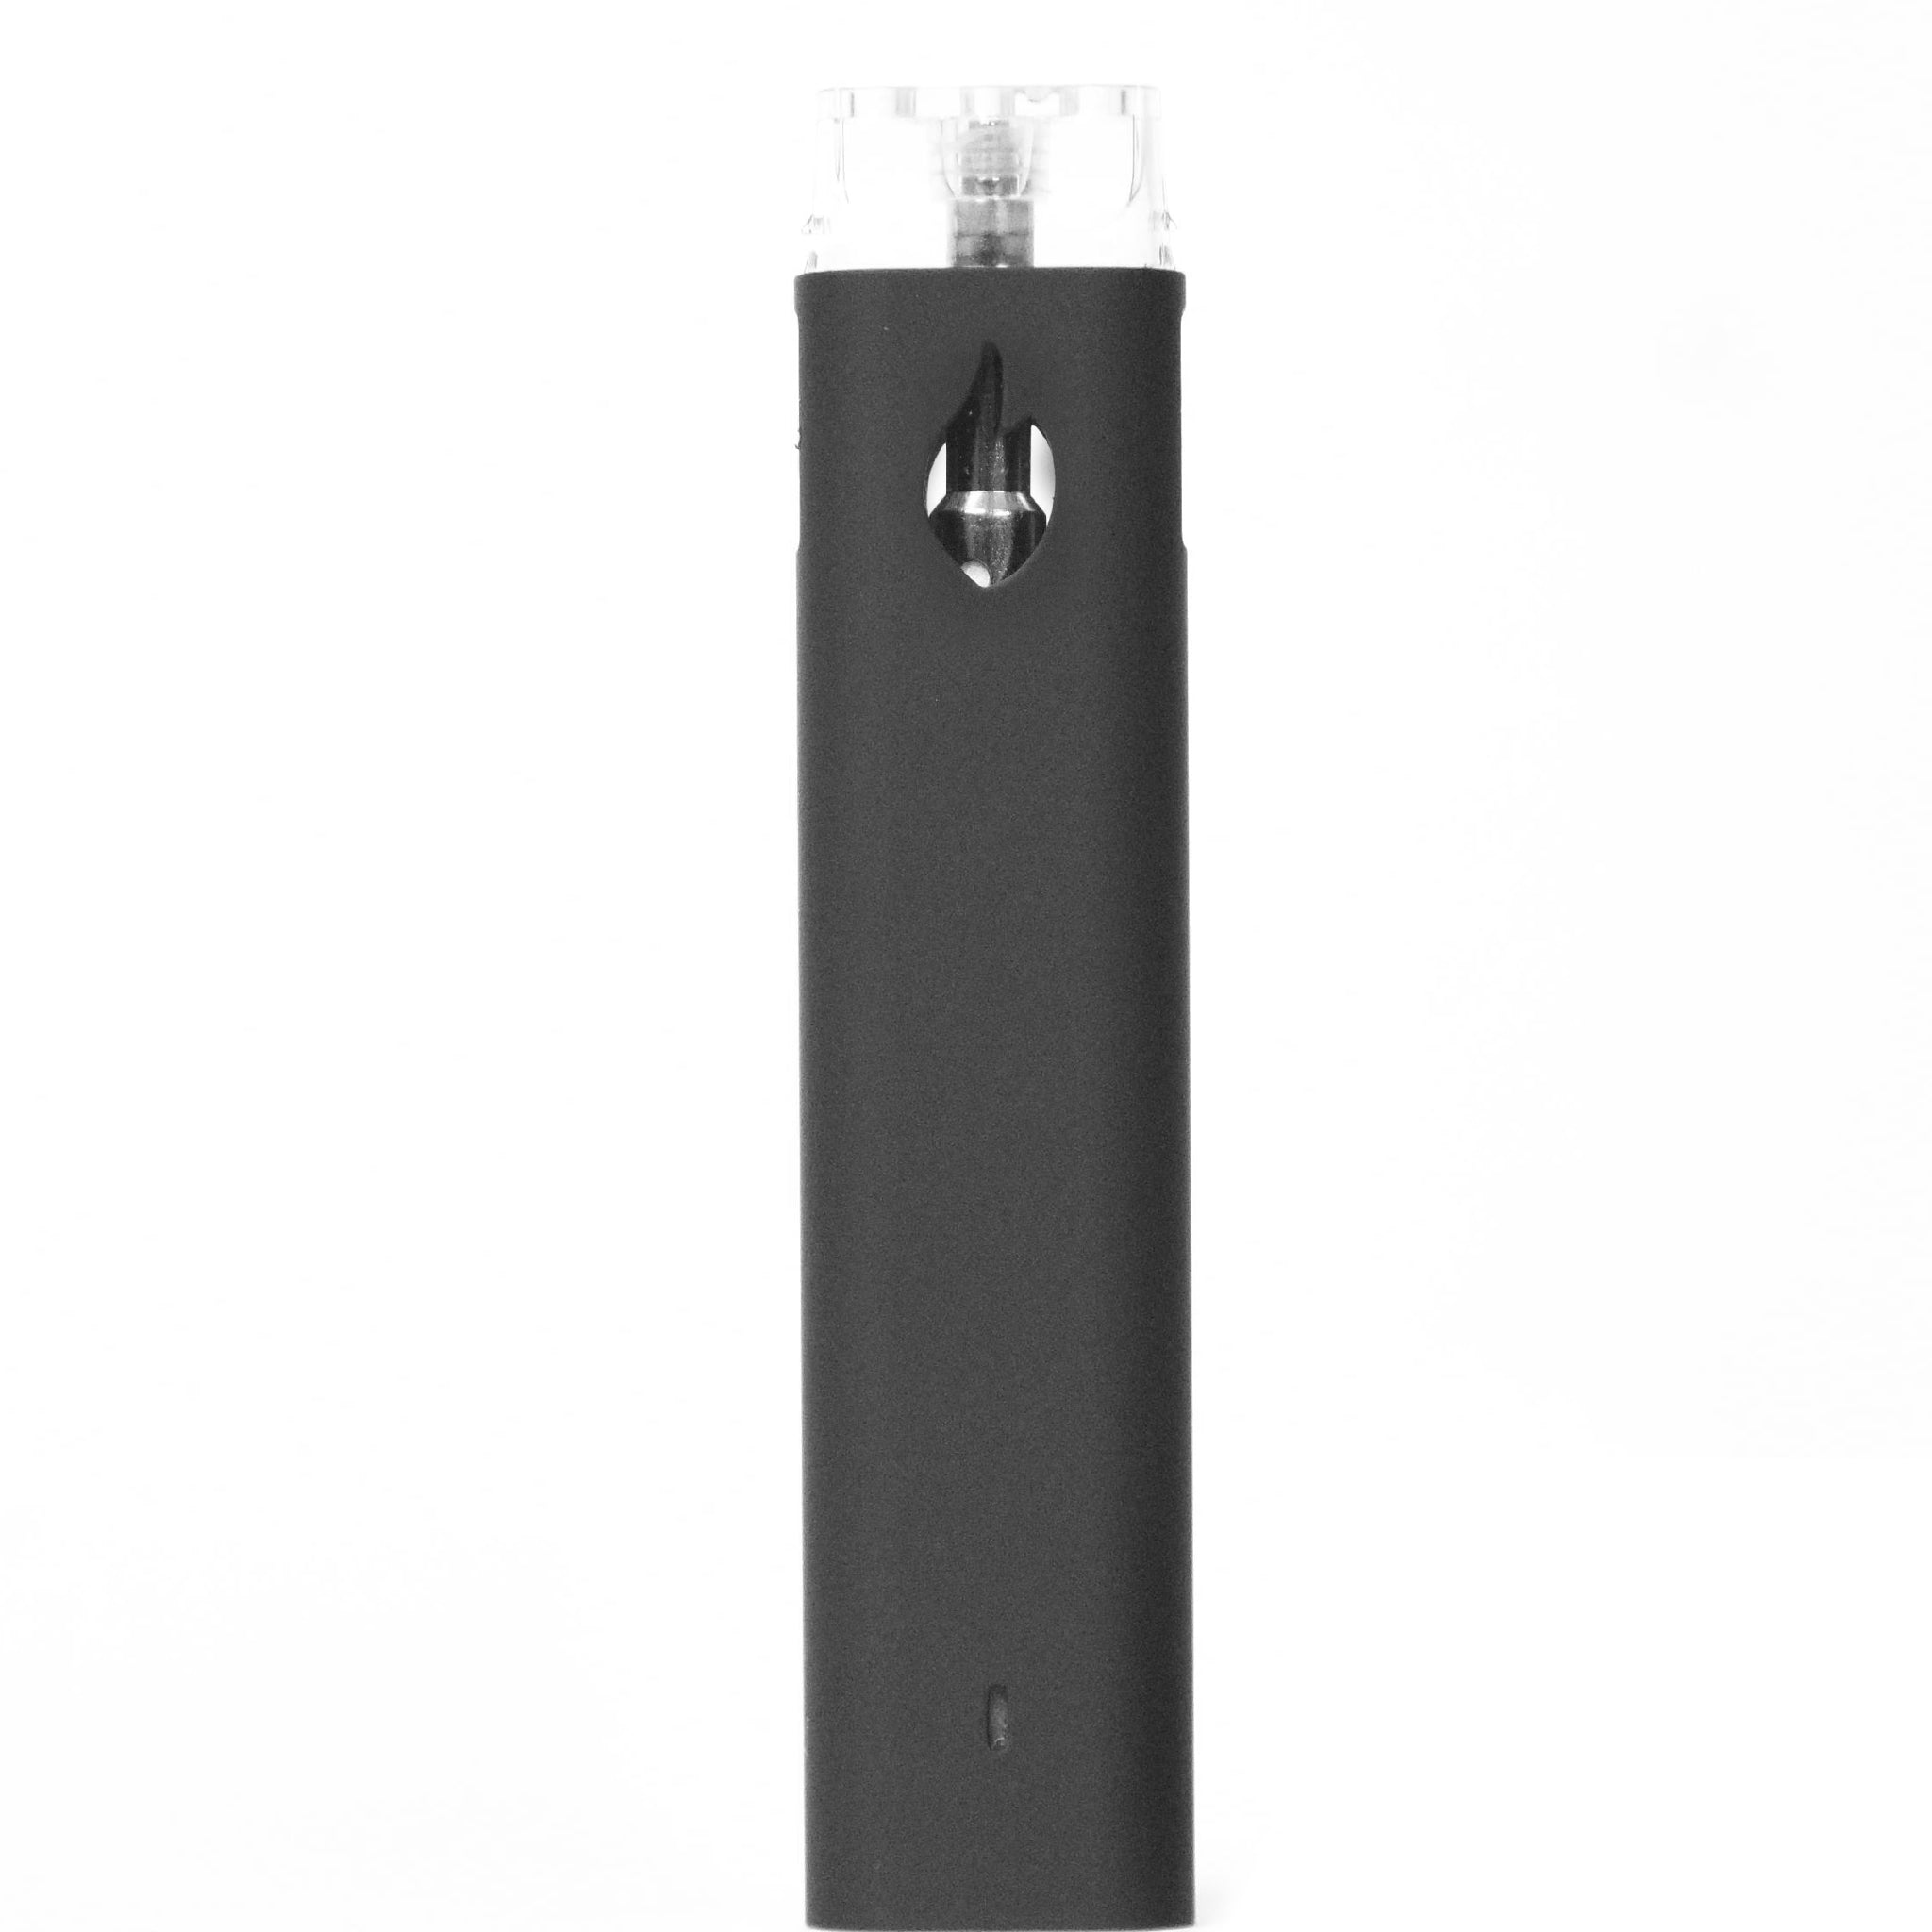 4th Gen Disposable Fire-Disposable Vaporizers-Vape Pens Wholesale